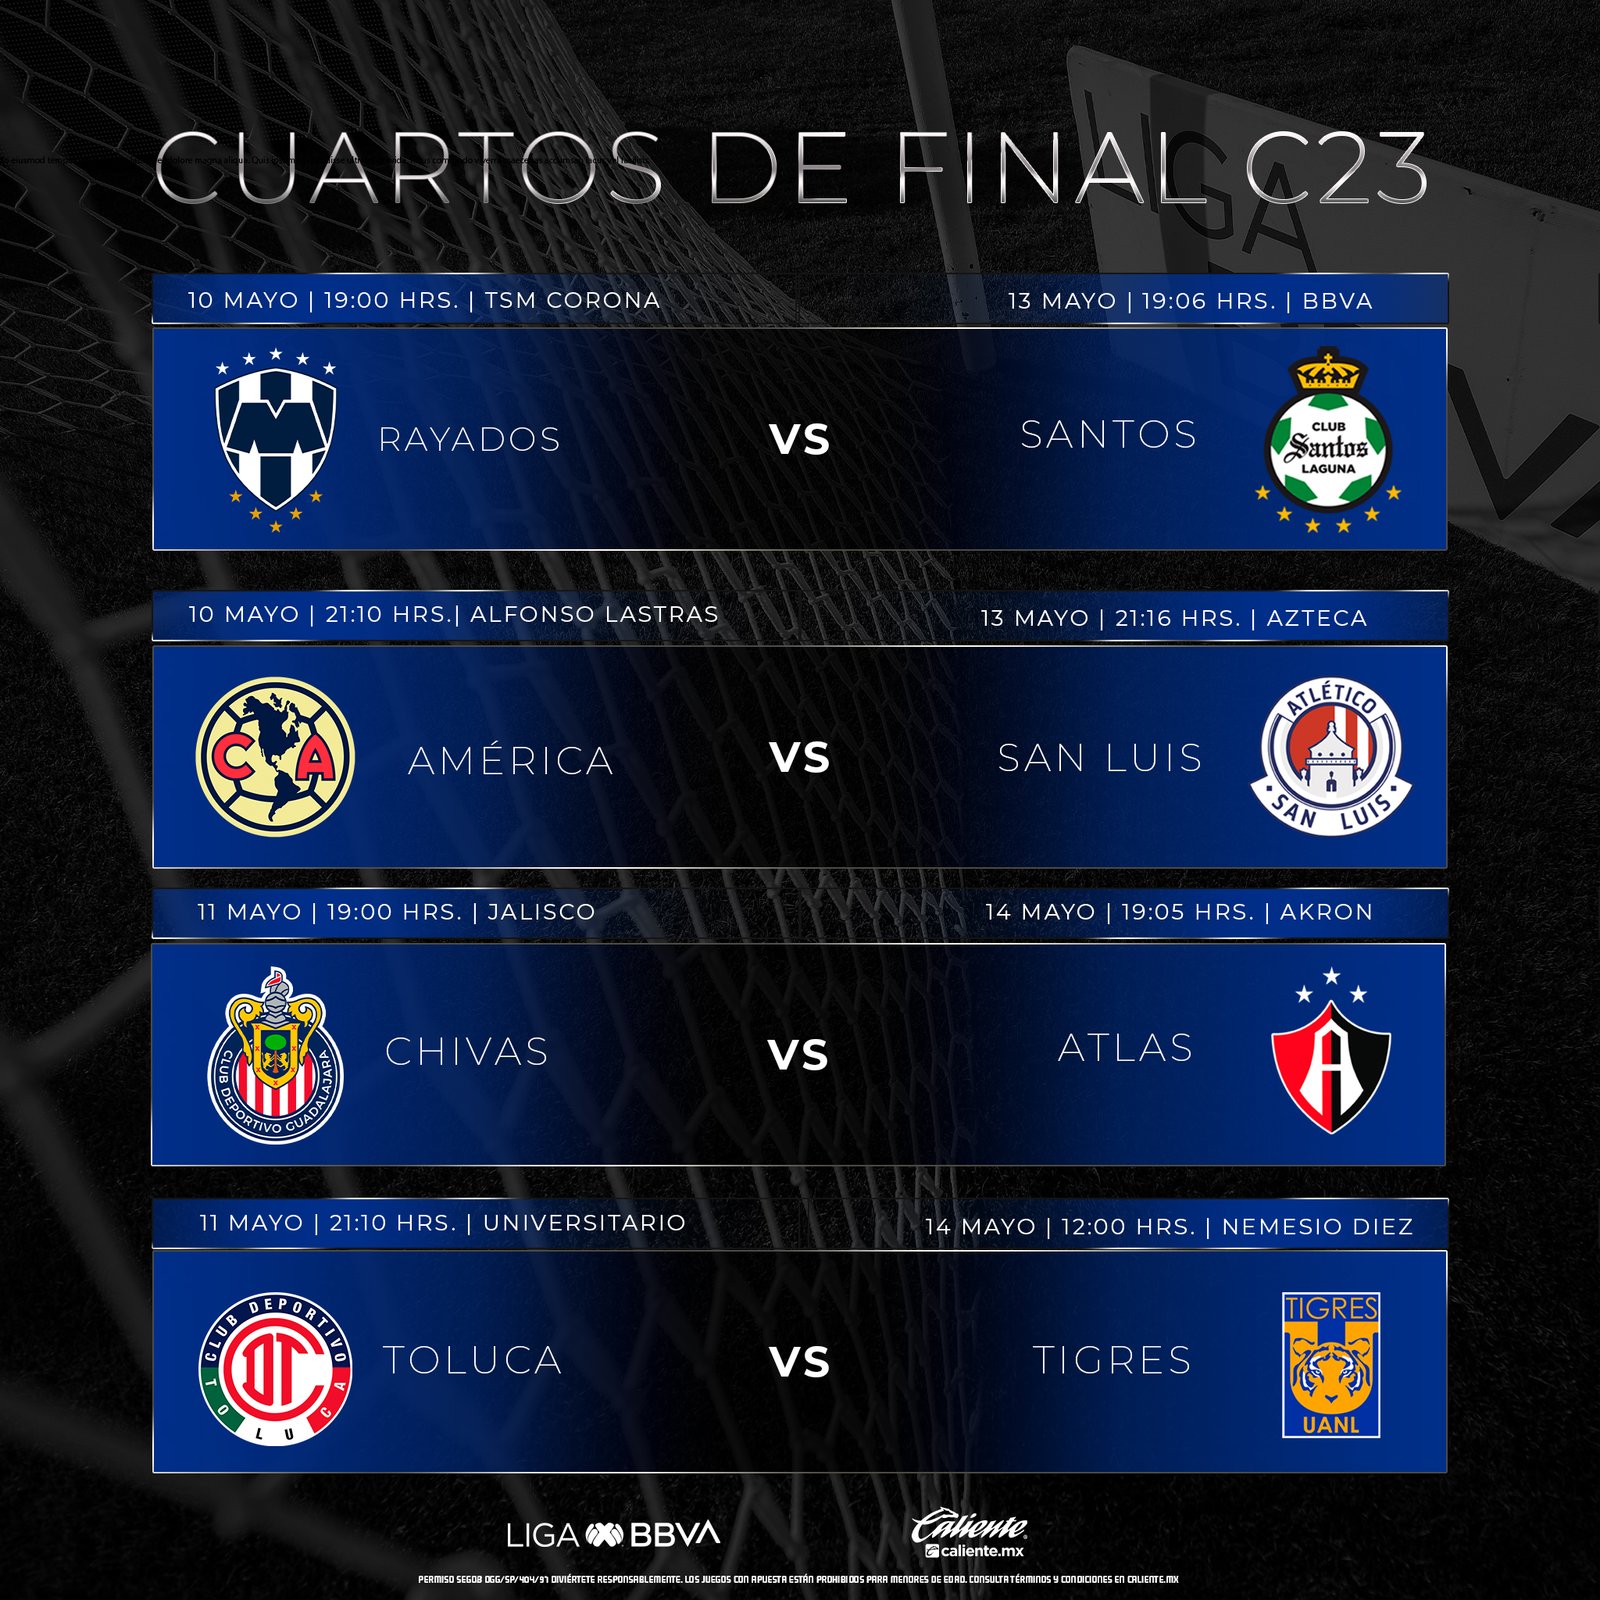 Cuartos de Final: América-San Luis se jugará miércoles y sábado; y el Clásico Tapatío Chivas-Atlas, jueves y domingo